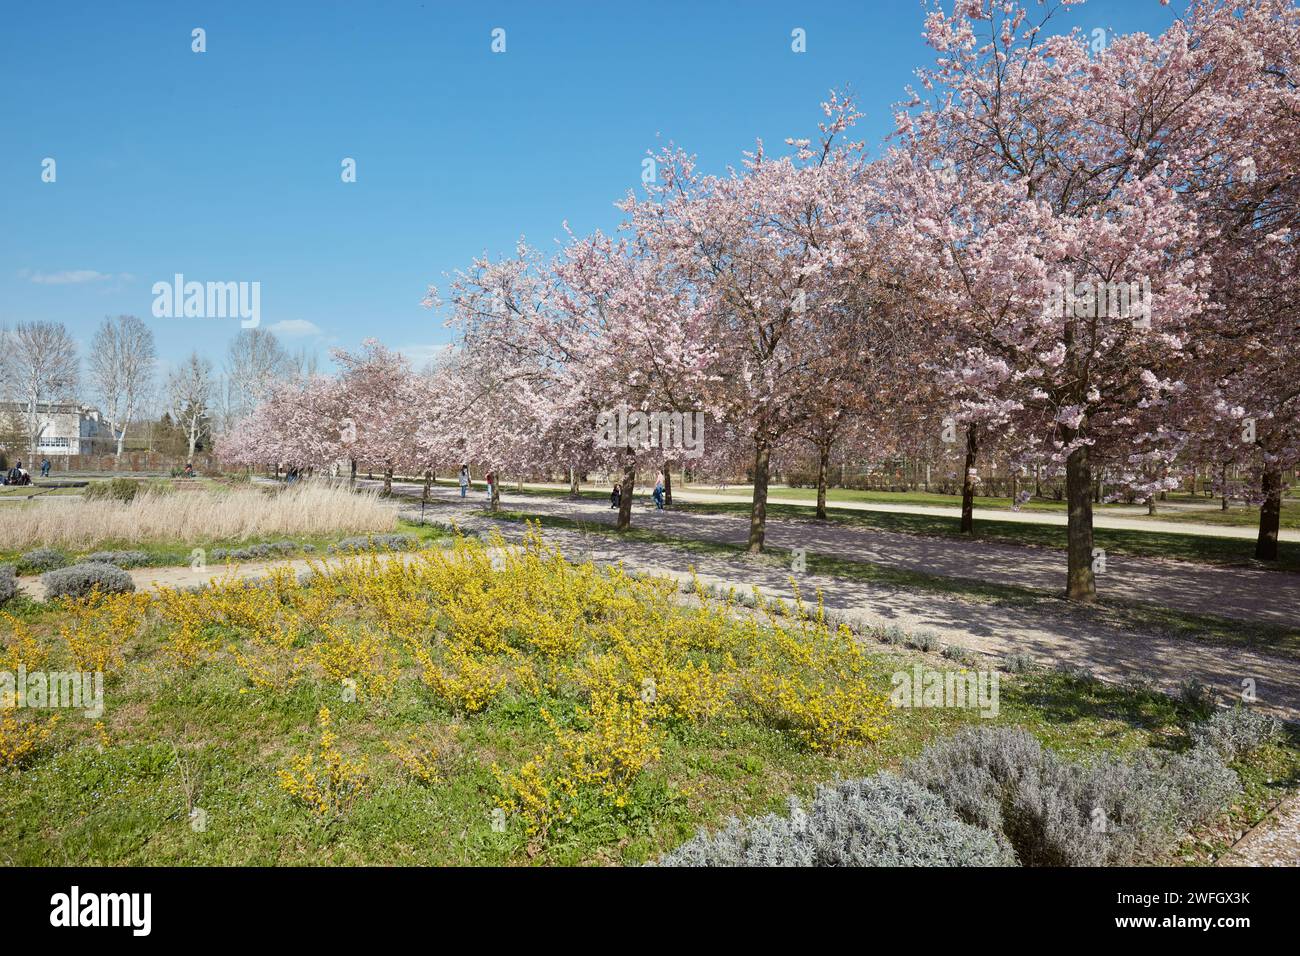 VENARIA REALE, ITALIEN - 29. MÄRZ 2023: Kirschblüte mit rosafarbenen Blüten und gelben Blumensträuchern im Park Reggia di Venaria bei Sonnenlicht im Frühling Stockfoto